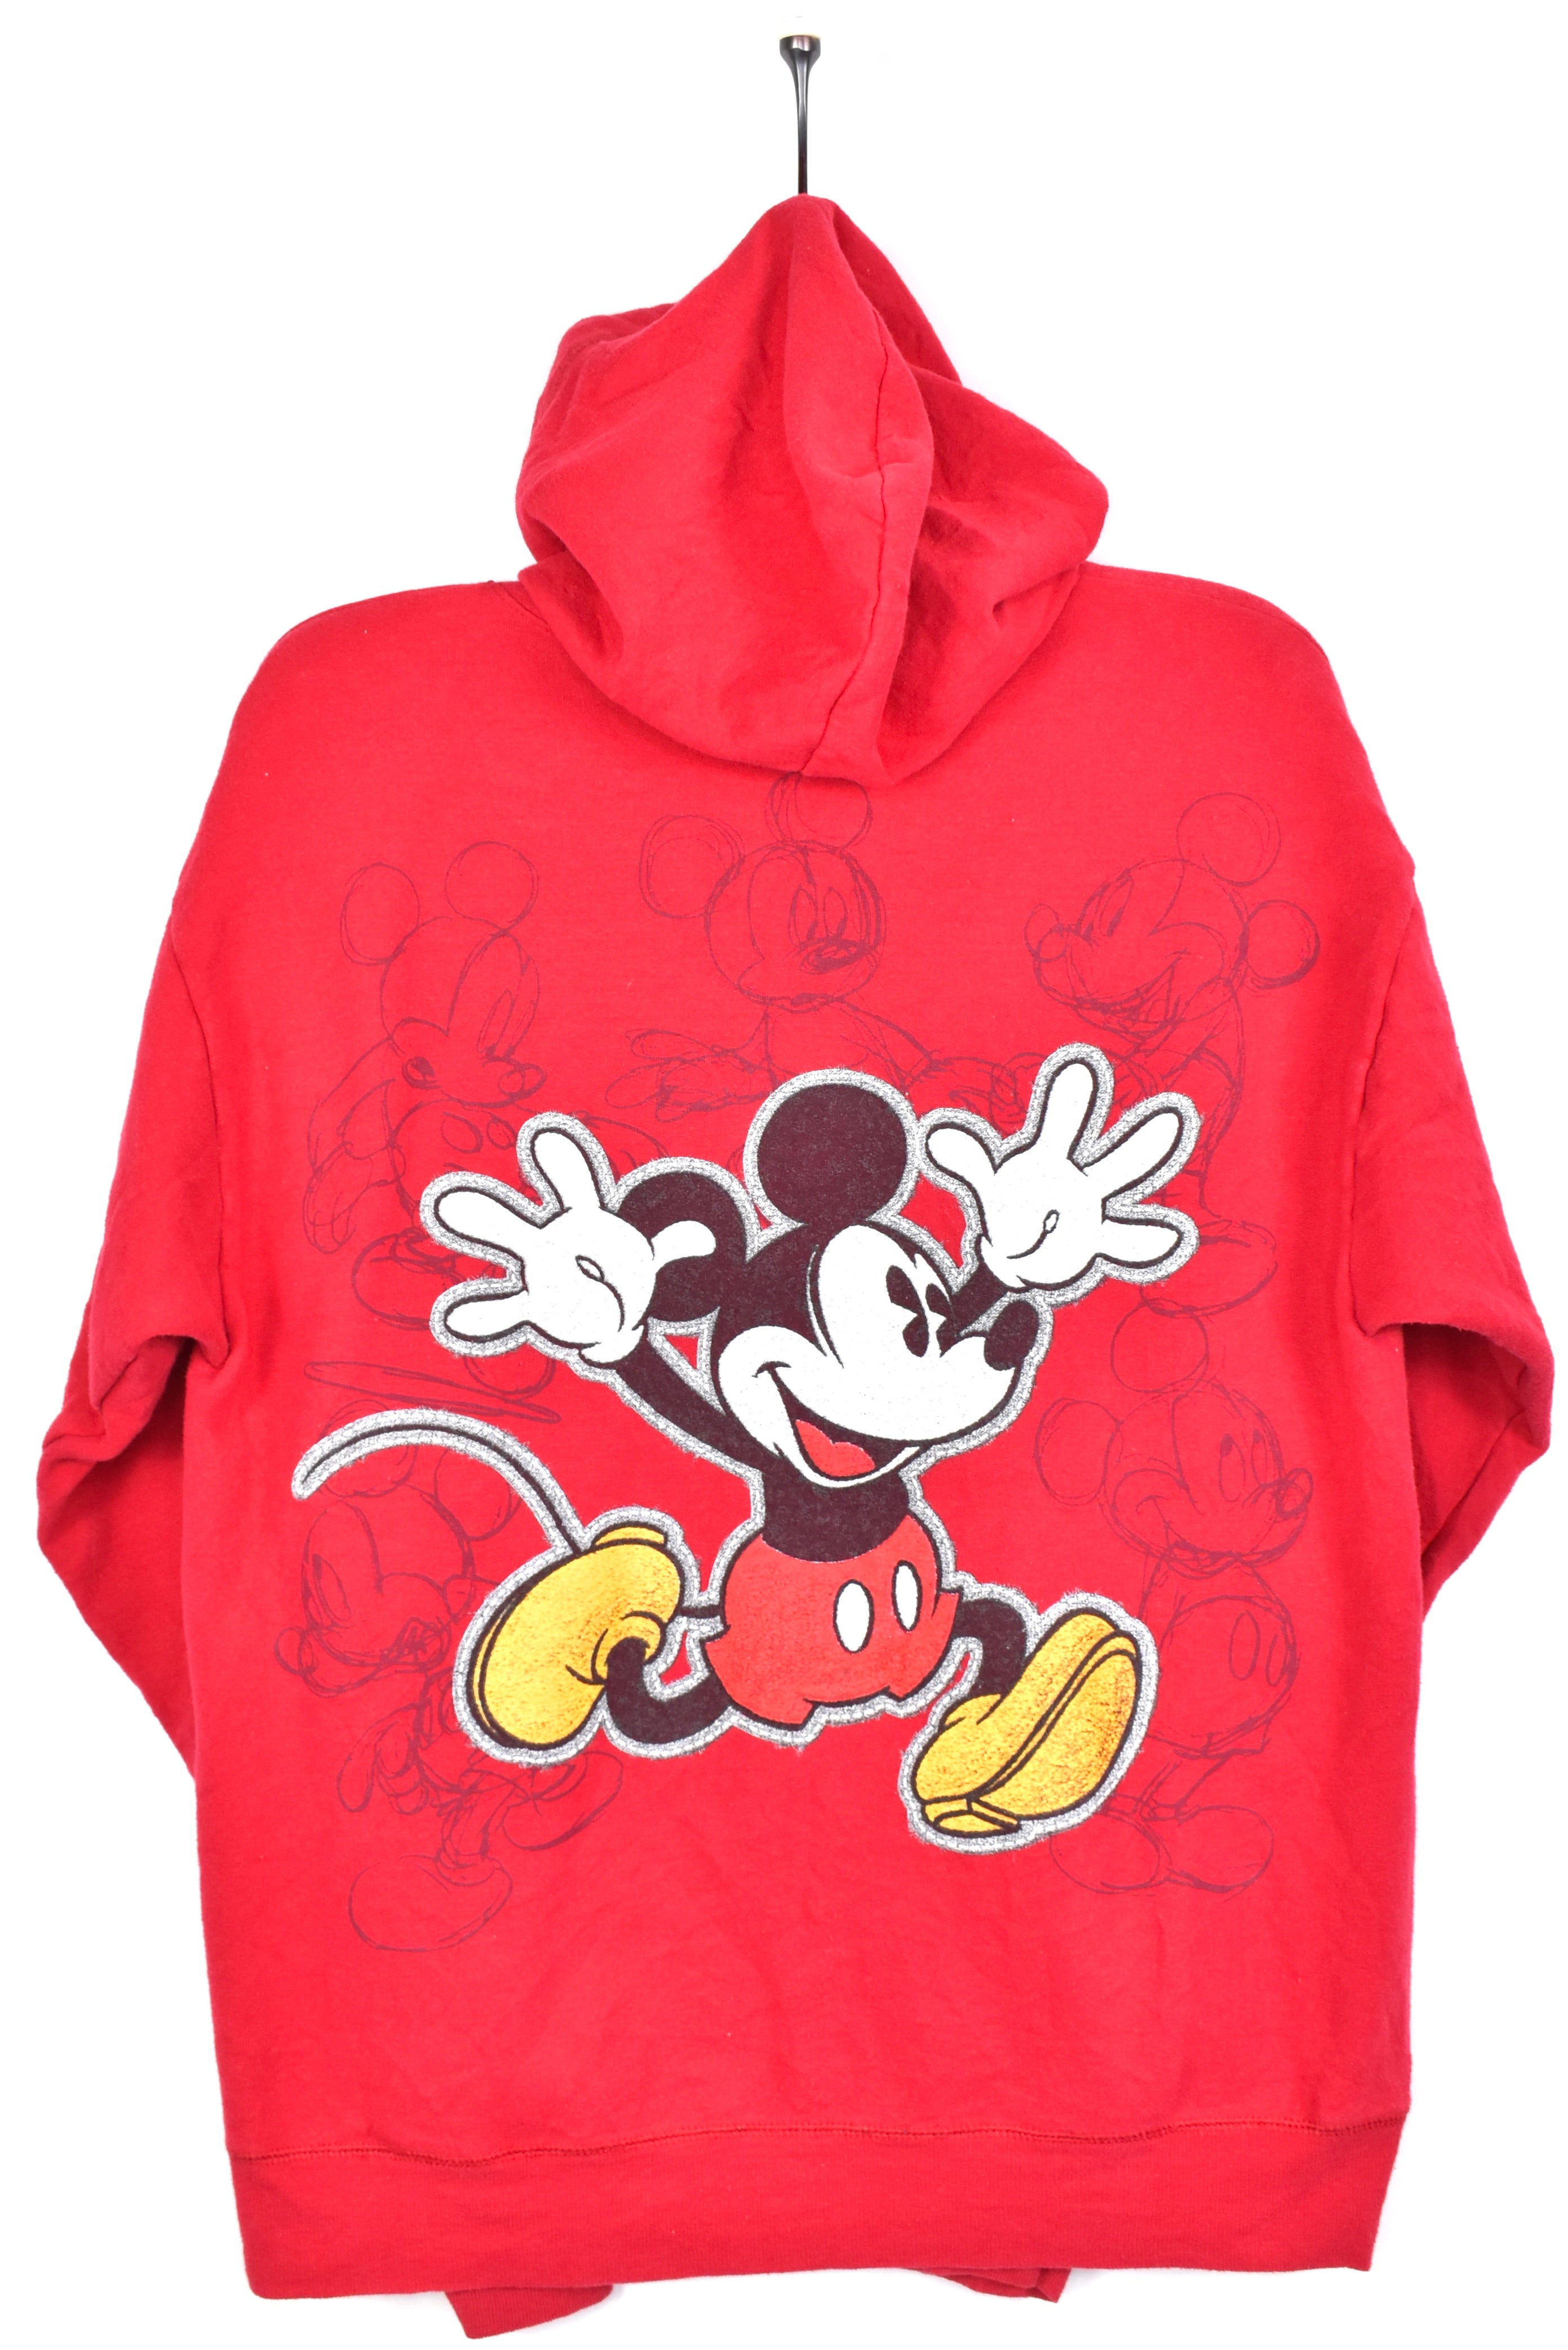 Vintage Mickey Mouse hoodie, Disney red graphic sweatshirt - AU M DISNEY / CARTOON